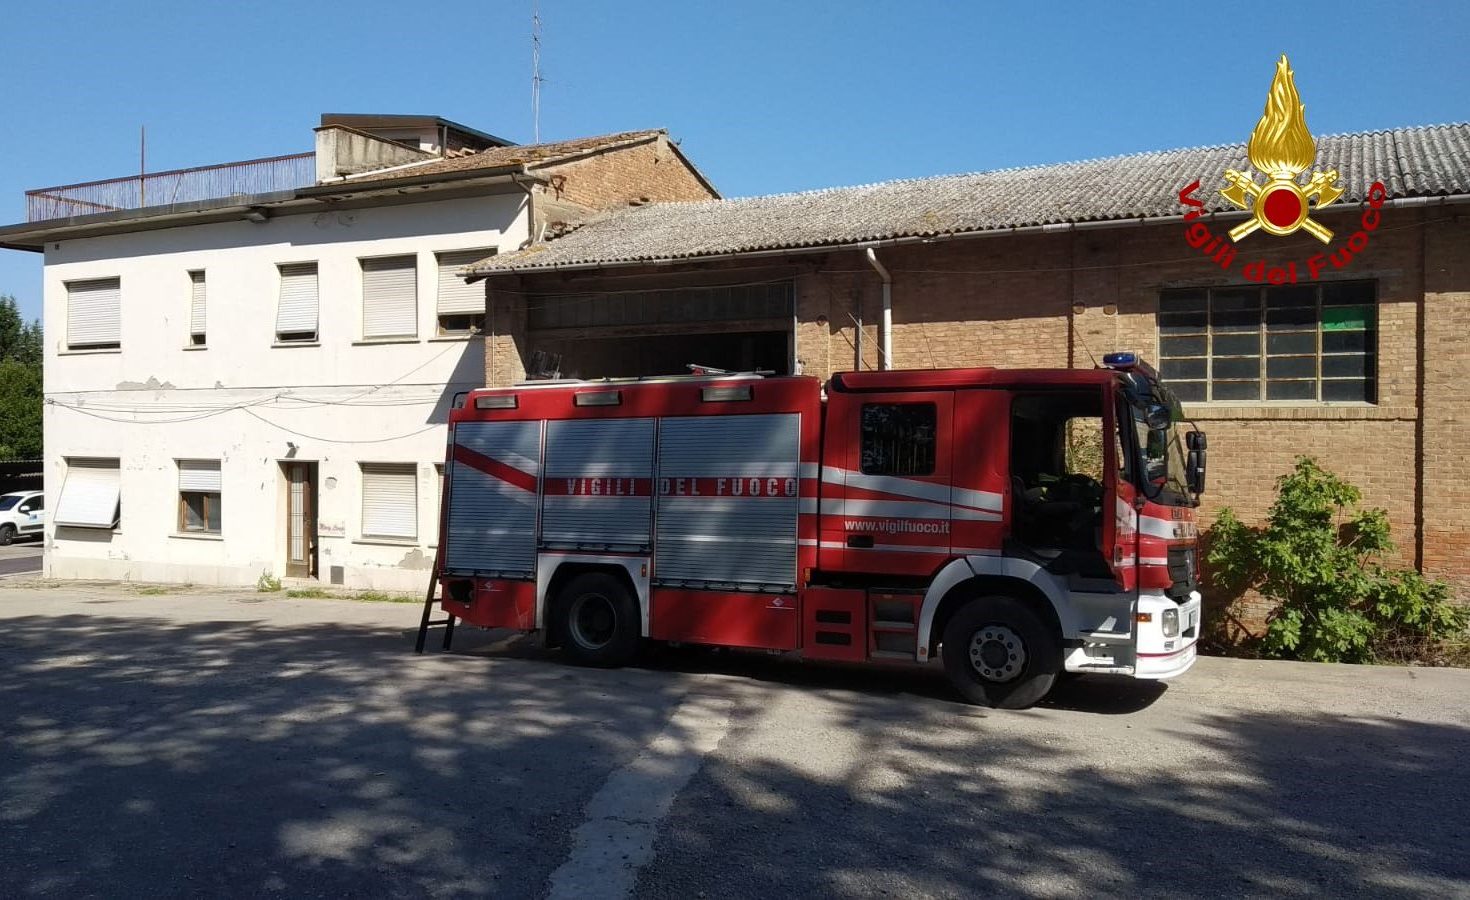 Morti sul lavoro, dall'inizio del 2019 ad oggi sono 21 i casi in Toscana